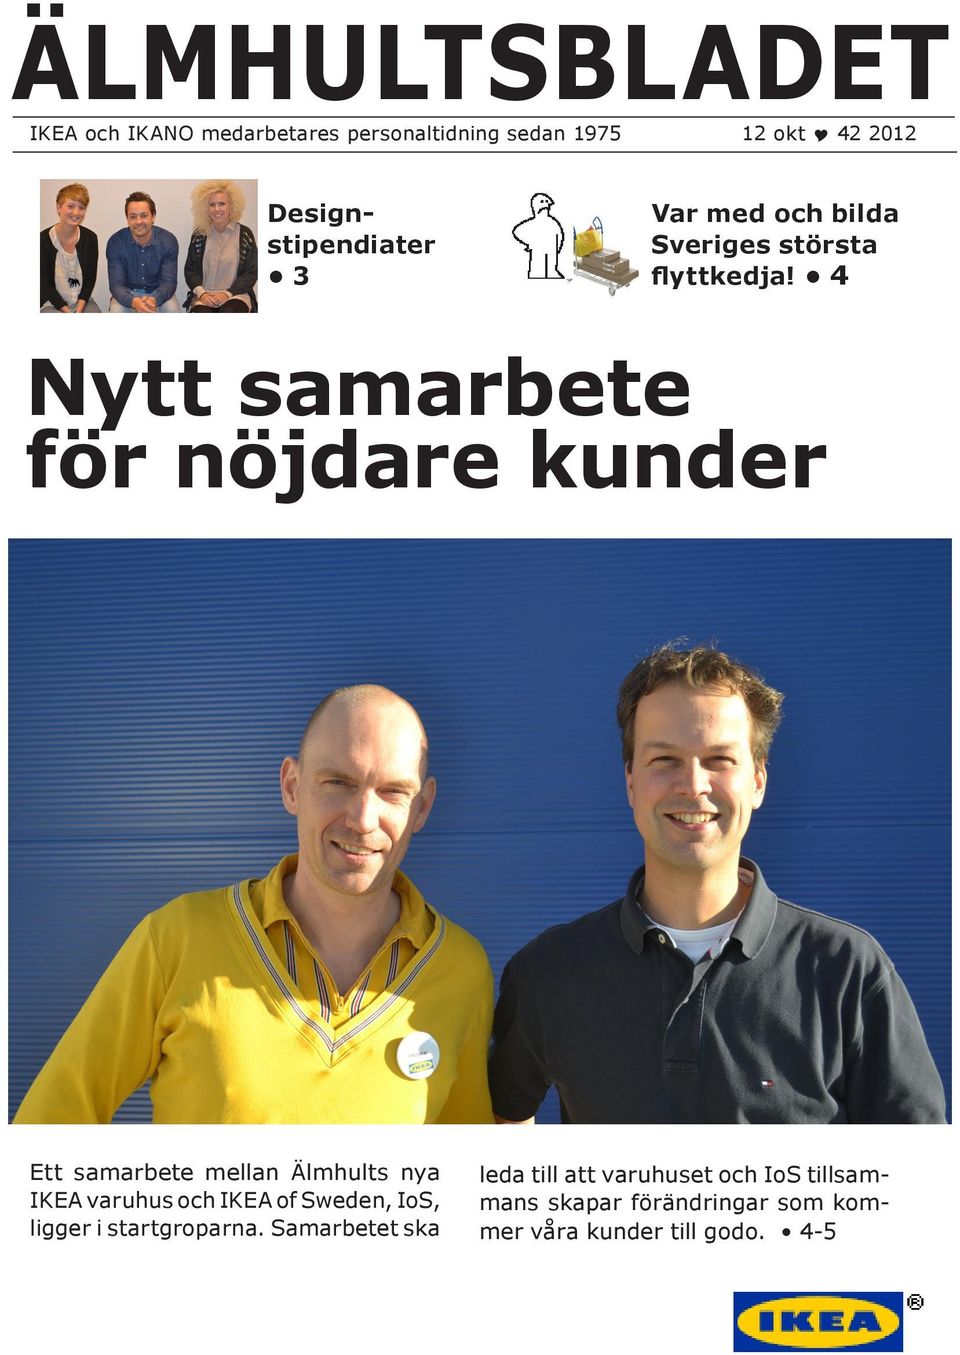 4 Nytt samarbete för nöjdare kunder Ett samarbete mellan Älmhults nya IKEA varuhus och IKEA of